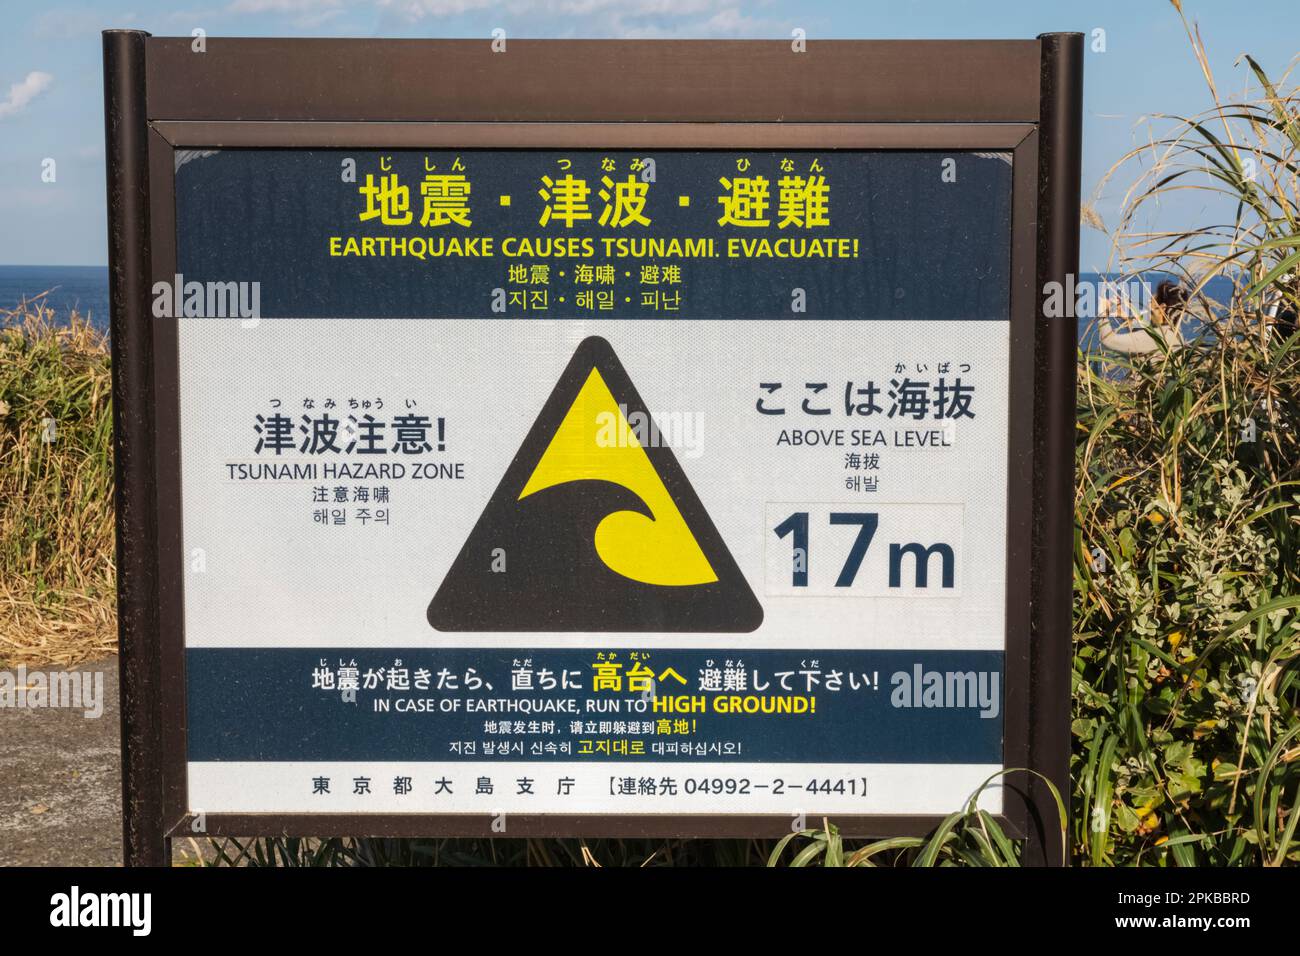 Japon, Honshu, île Izu-Oshima, panneau d'avertissement bilingue de tsunami Banque D'Images